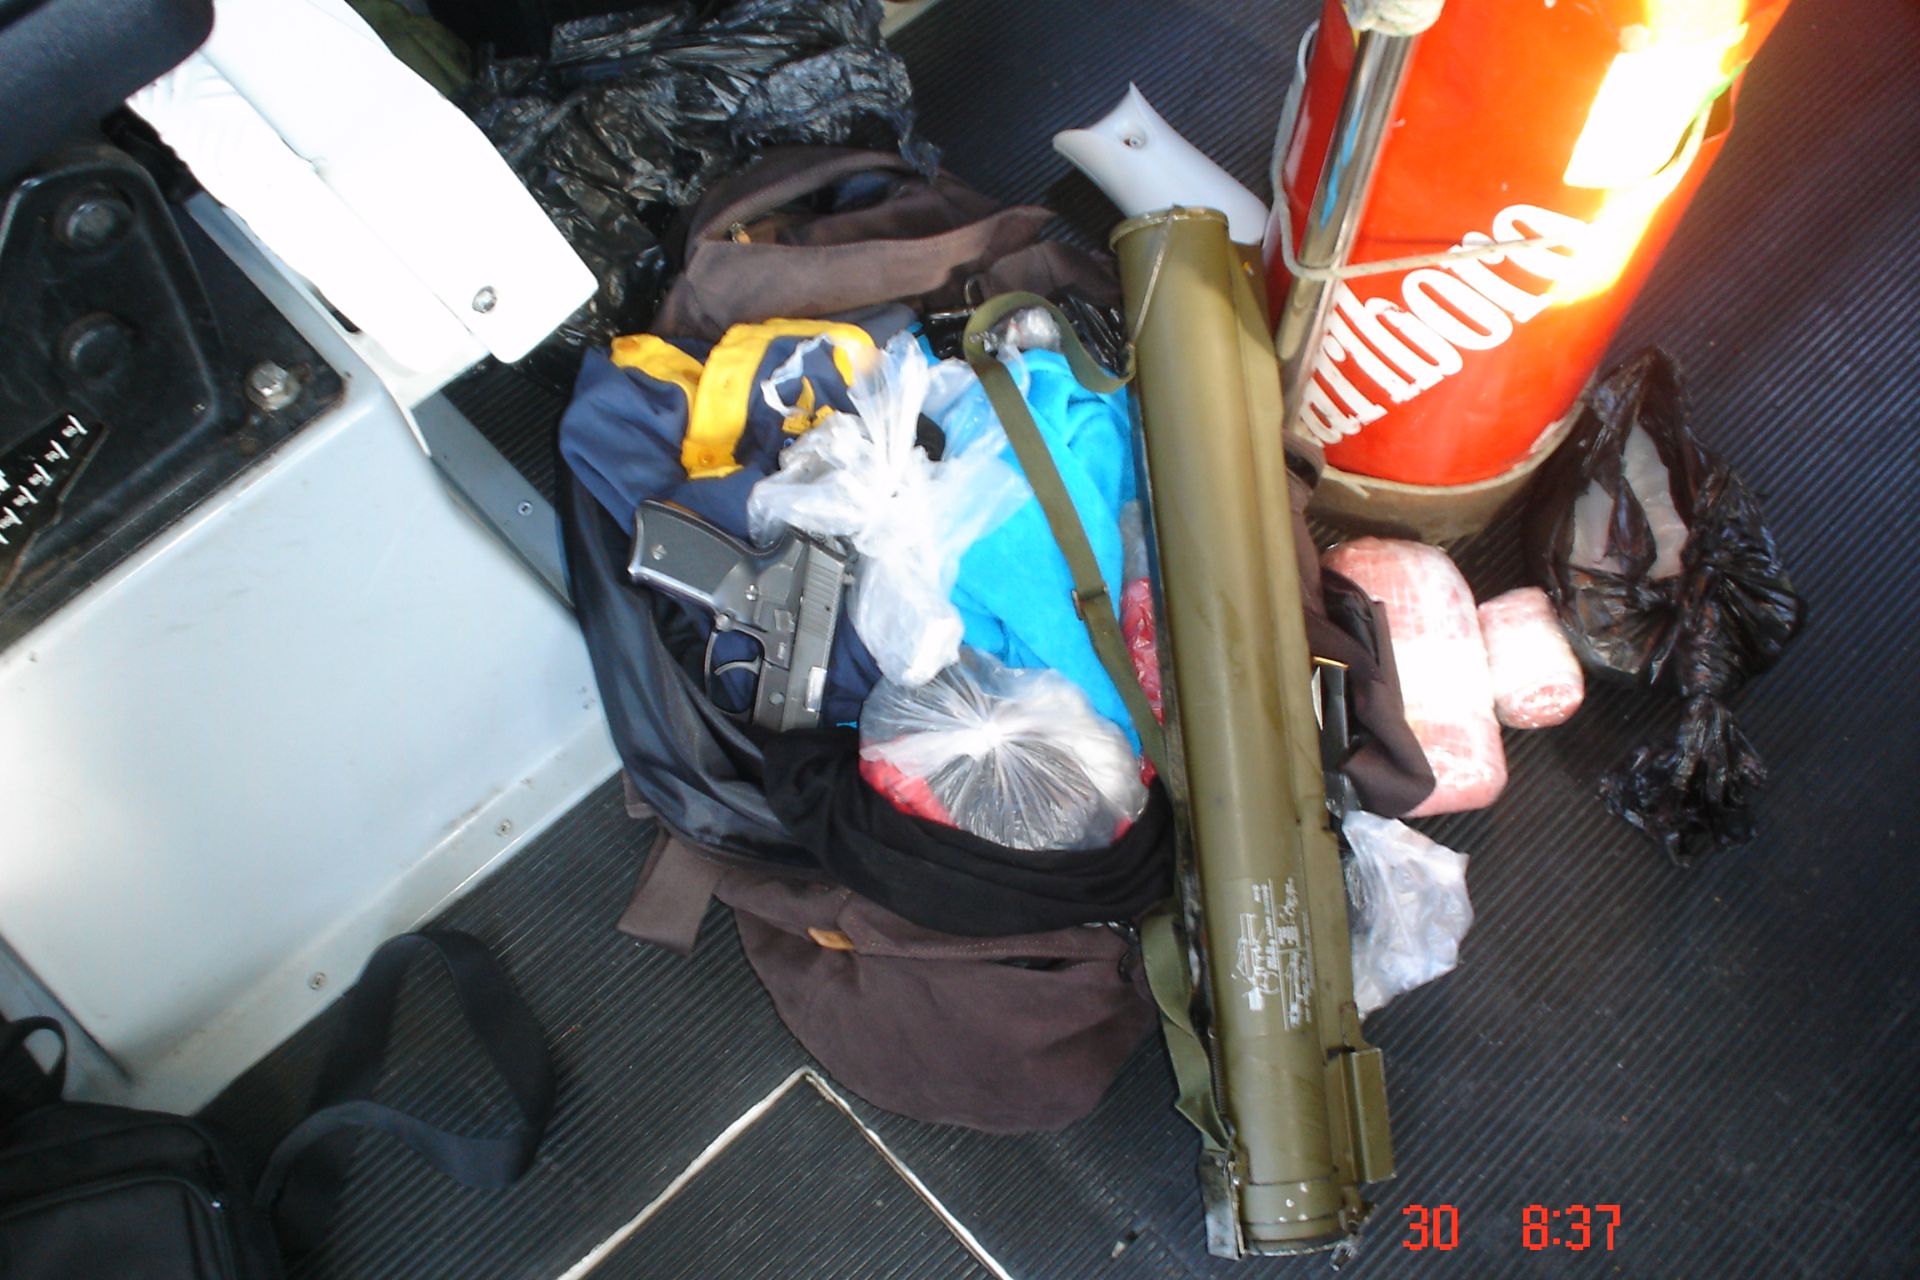 Τα όπλα που βρέθηκαν στο φουσκωτό - ΦΩΤΟΓΡΑΦΙΑ EUROKINISSI